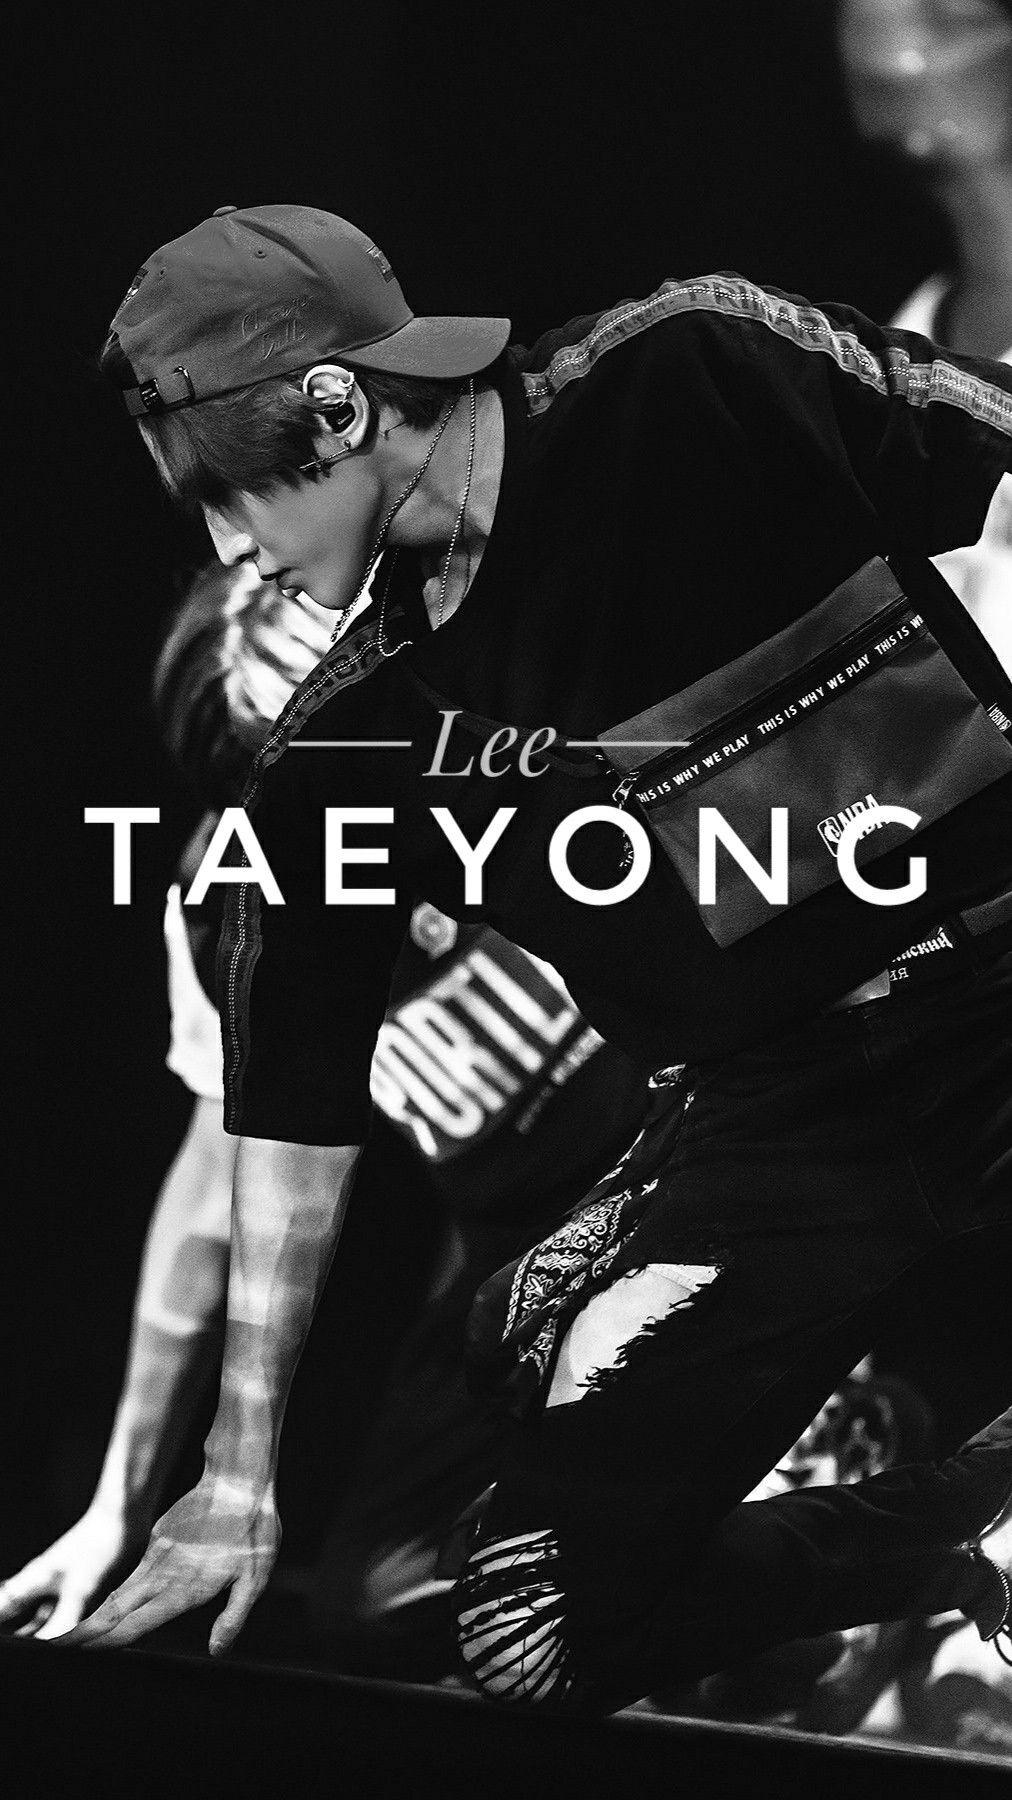 Lee Taeyong▫from NCT▫Wallpaper #NCT #TAEYONG #LEETAEYONG